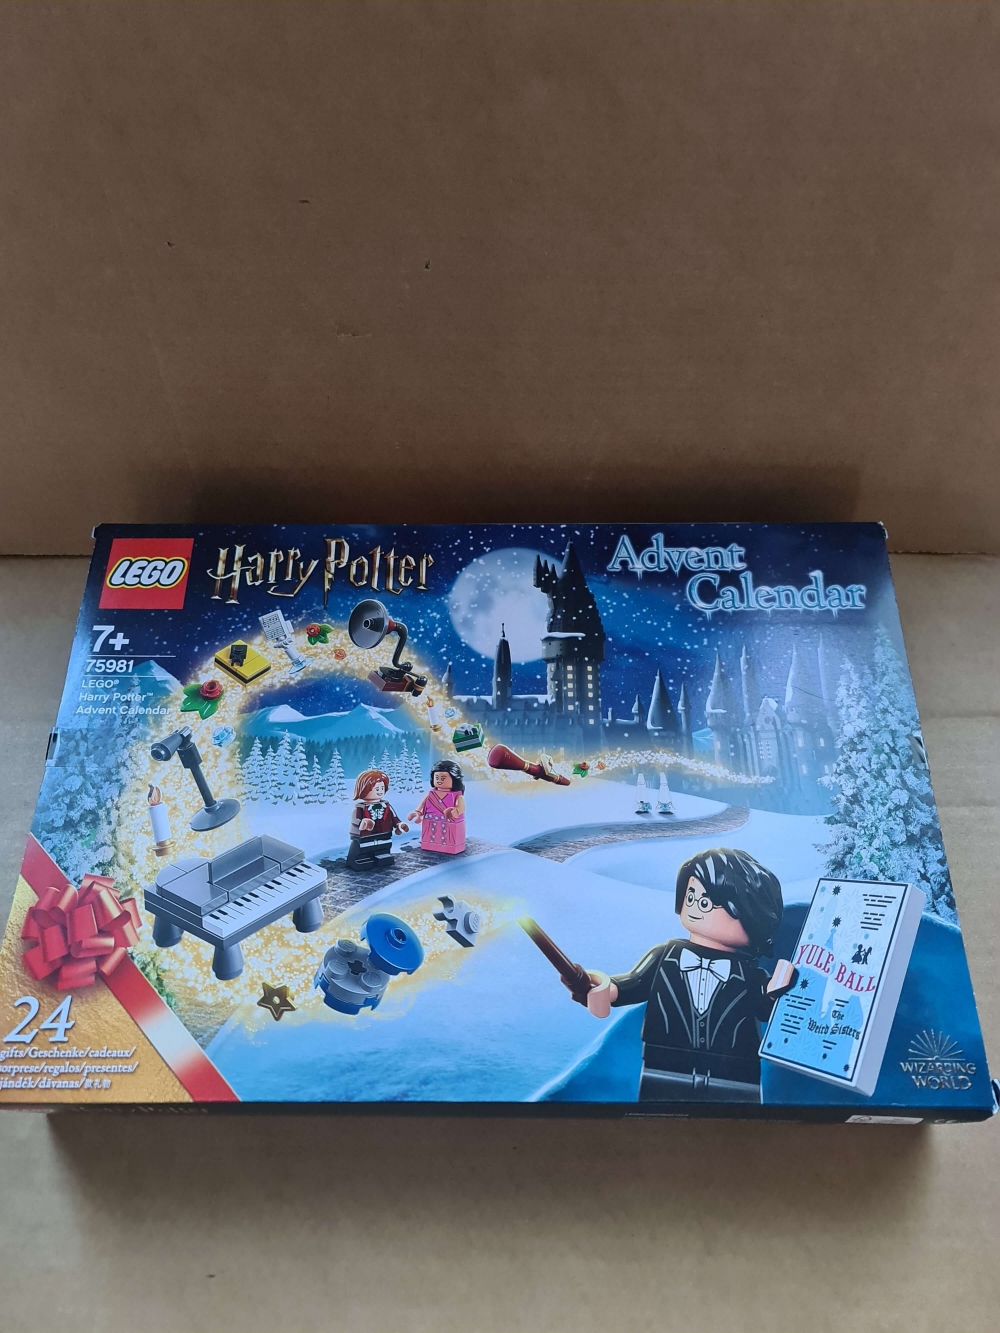 Sett 75981 fra Lego Holiday&Event : Advent : Harry Potter serien.
Ny og forseglet.